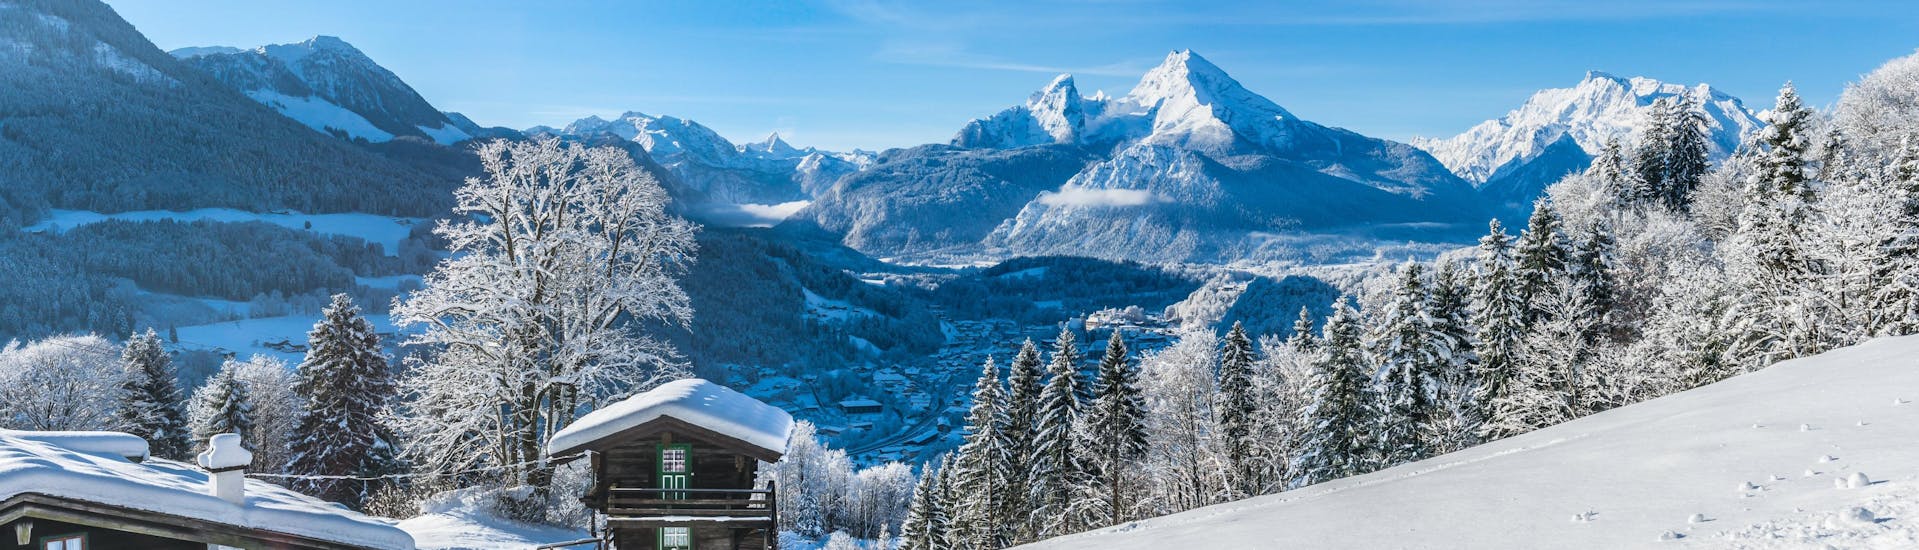 Ein Blick über die verträumte Winterlandschaft von Berchtesgaden - Jenner, einem beliebten deutschen Skigebiet in dem Besucher bei einer der örtlichen Skischulen Skikurse buchen können.